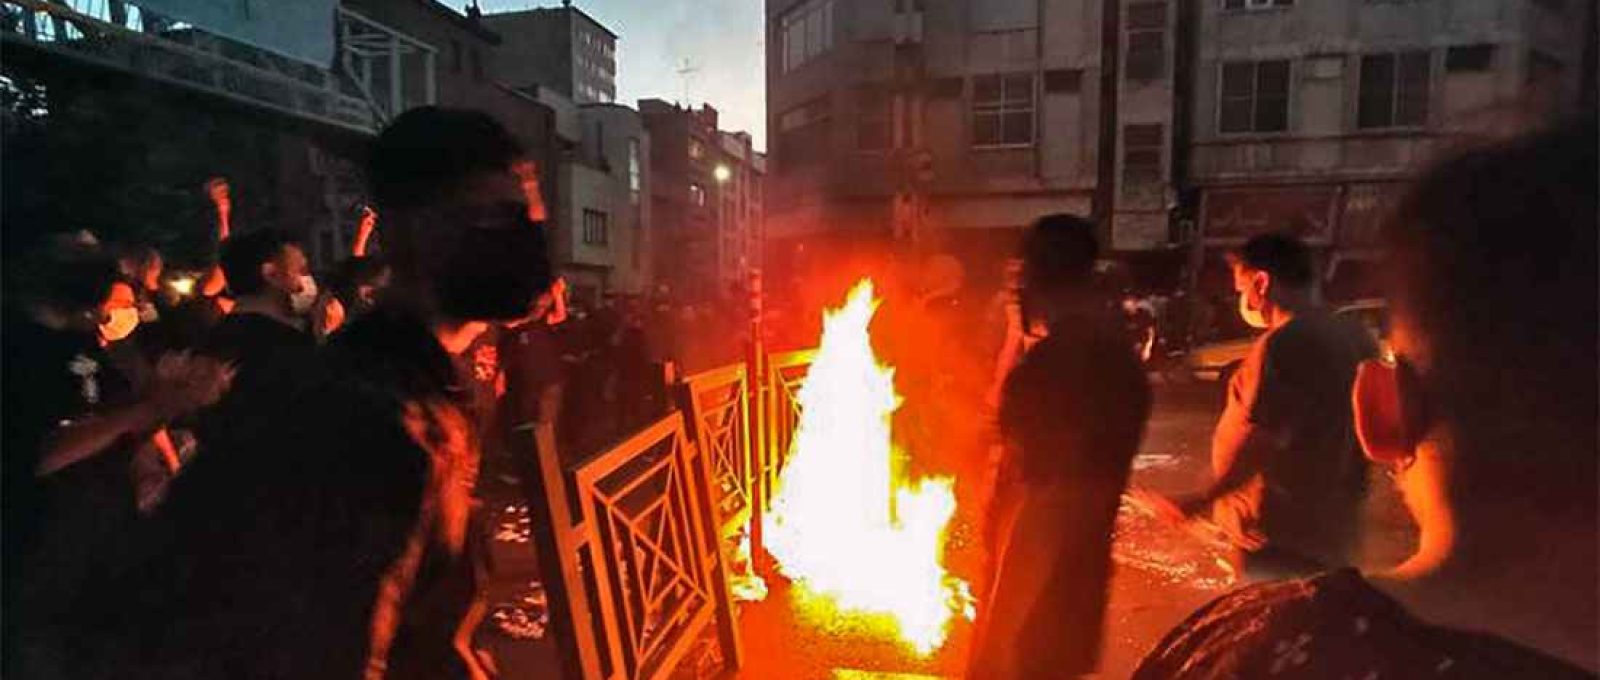 Manifestantes fazem fogo e bloqueiam uma rua durante protesto pela morte de uma mulher detida pela polícia da moral, no centro de Teerã, Irã (Associated Press).